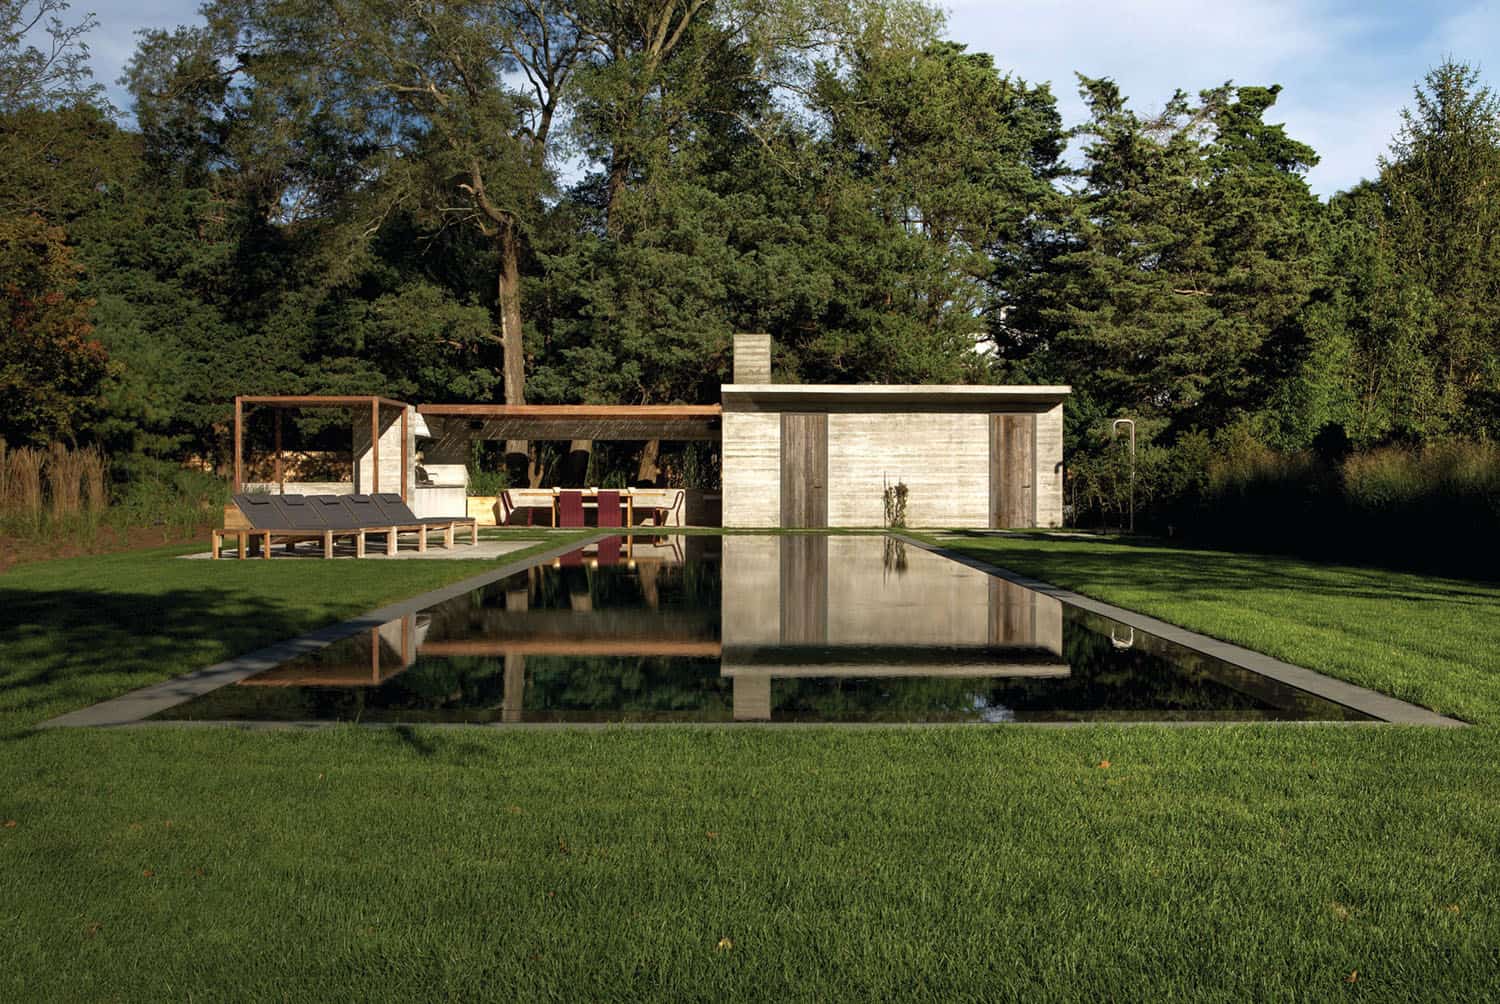 modern-barn-house-pool